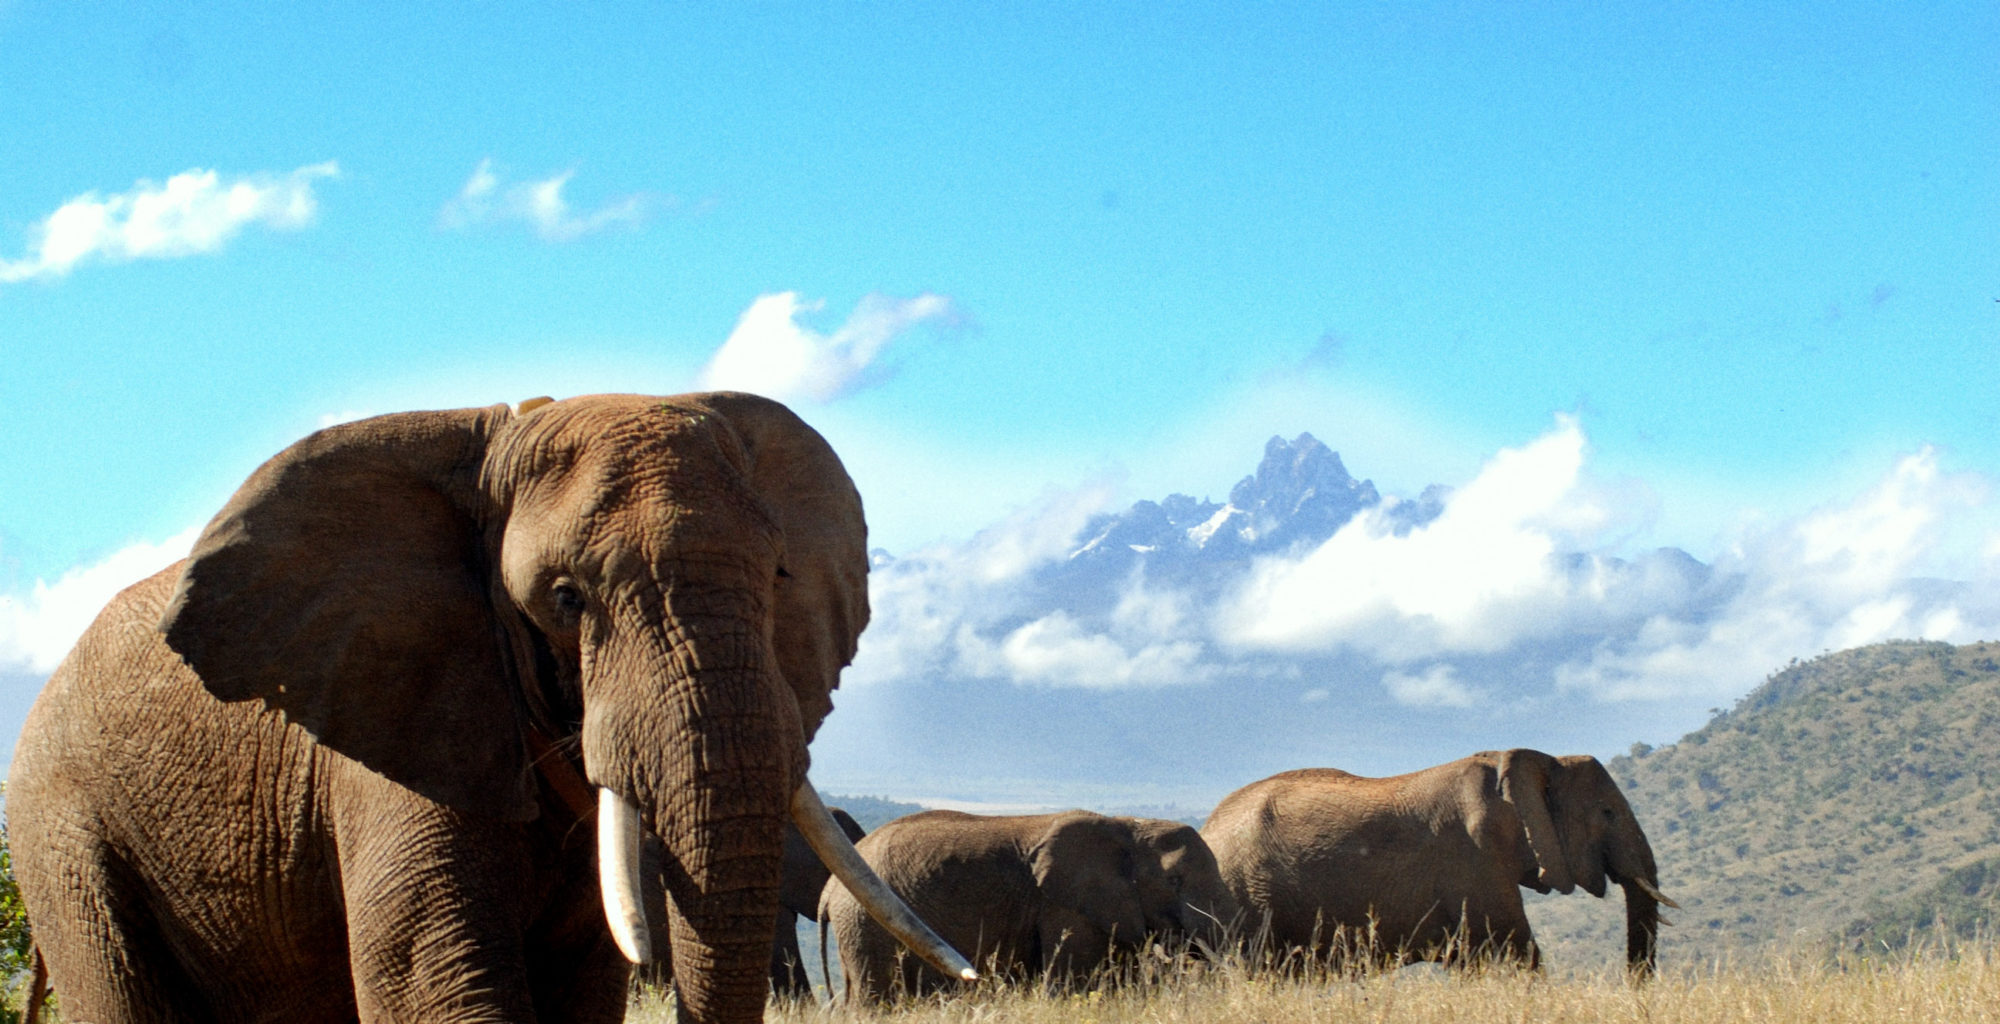 Watching Elephants Kenya